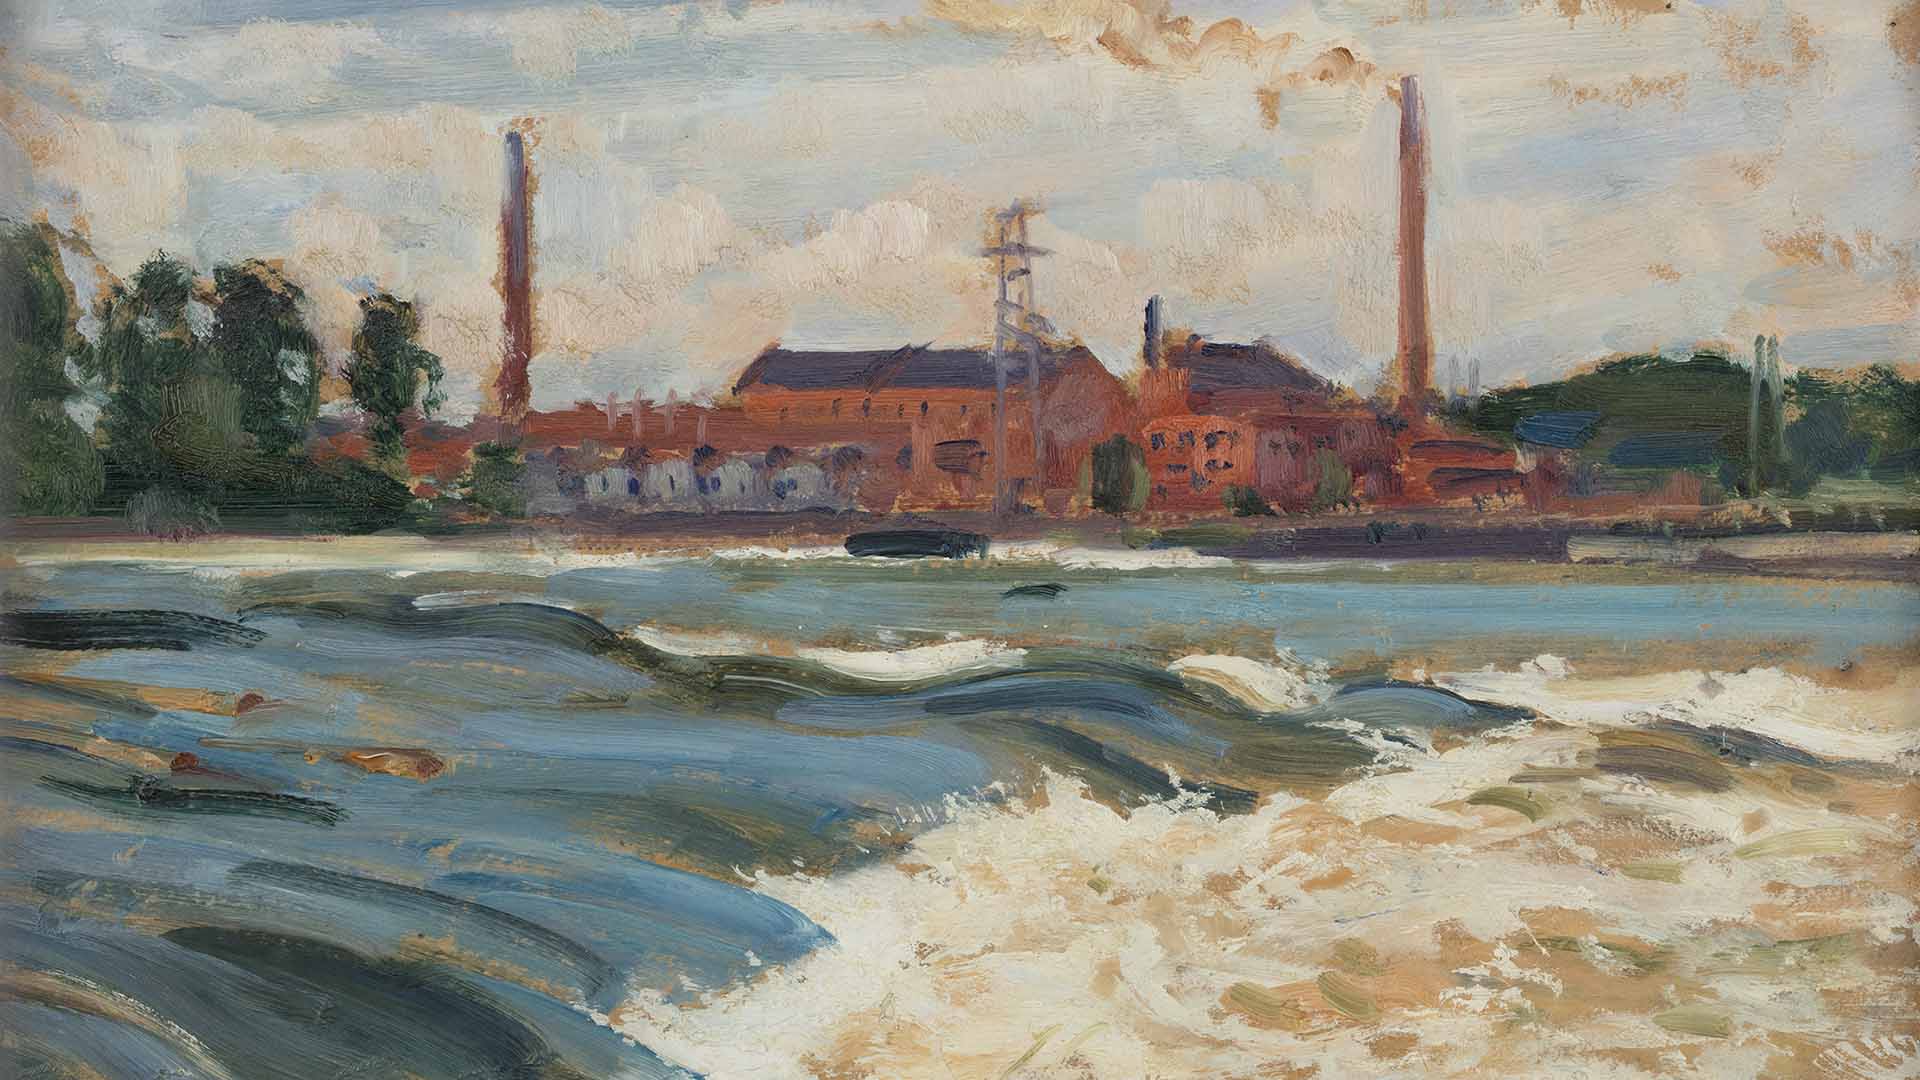 Verner Thomén maalaus Kymintehdas vuodelta 1932. Taustalla punainen tehdasrakennus piippuineen, etualalla vuolaana virtaava joki koskineen.